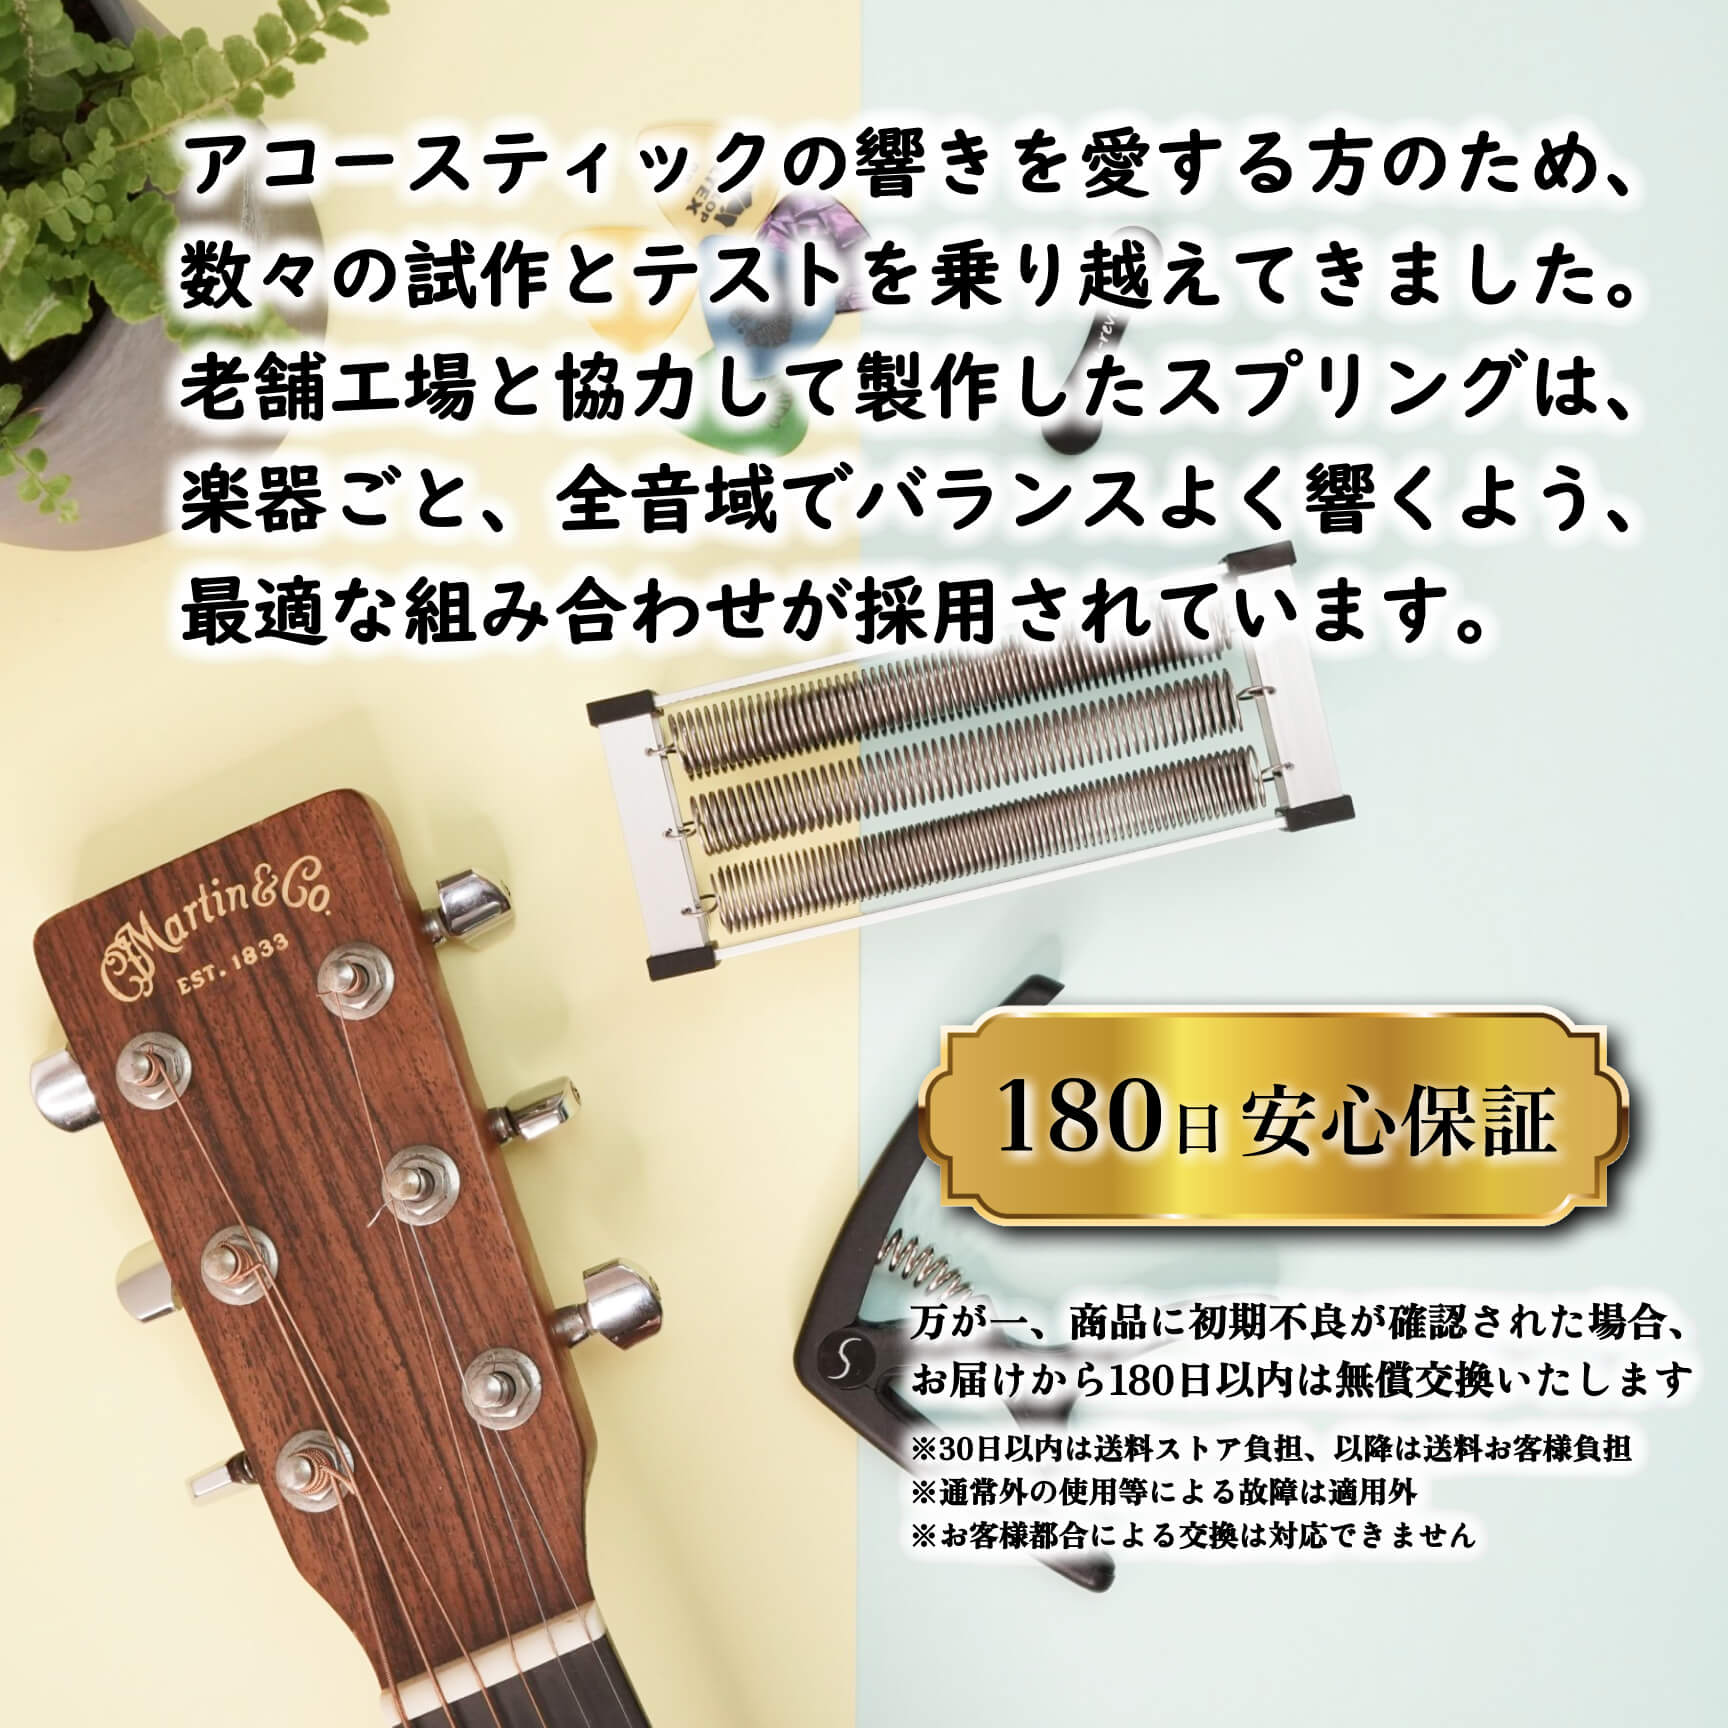 natu-reverb AC-1n for acoustic guitar